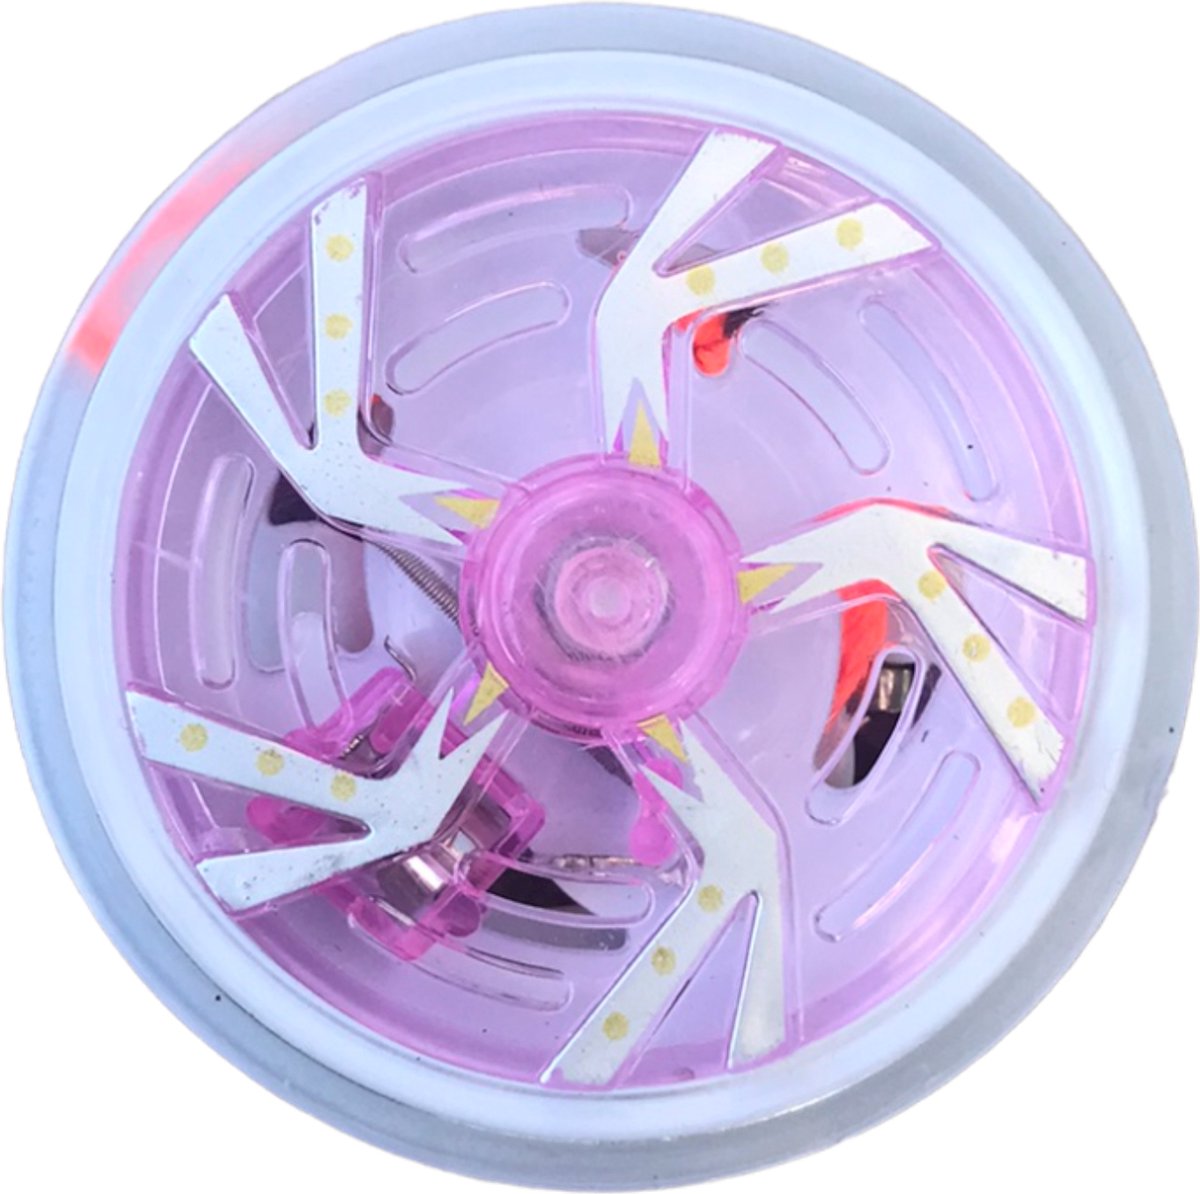 Jobber - Jojo met verlichting - Yoyo met licht - Multicolor met roze - Jobber Toys